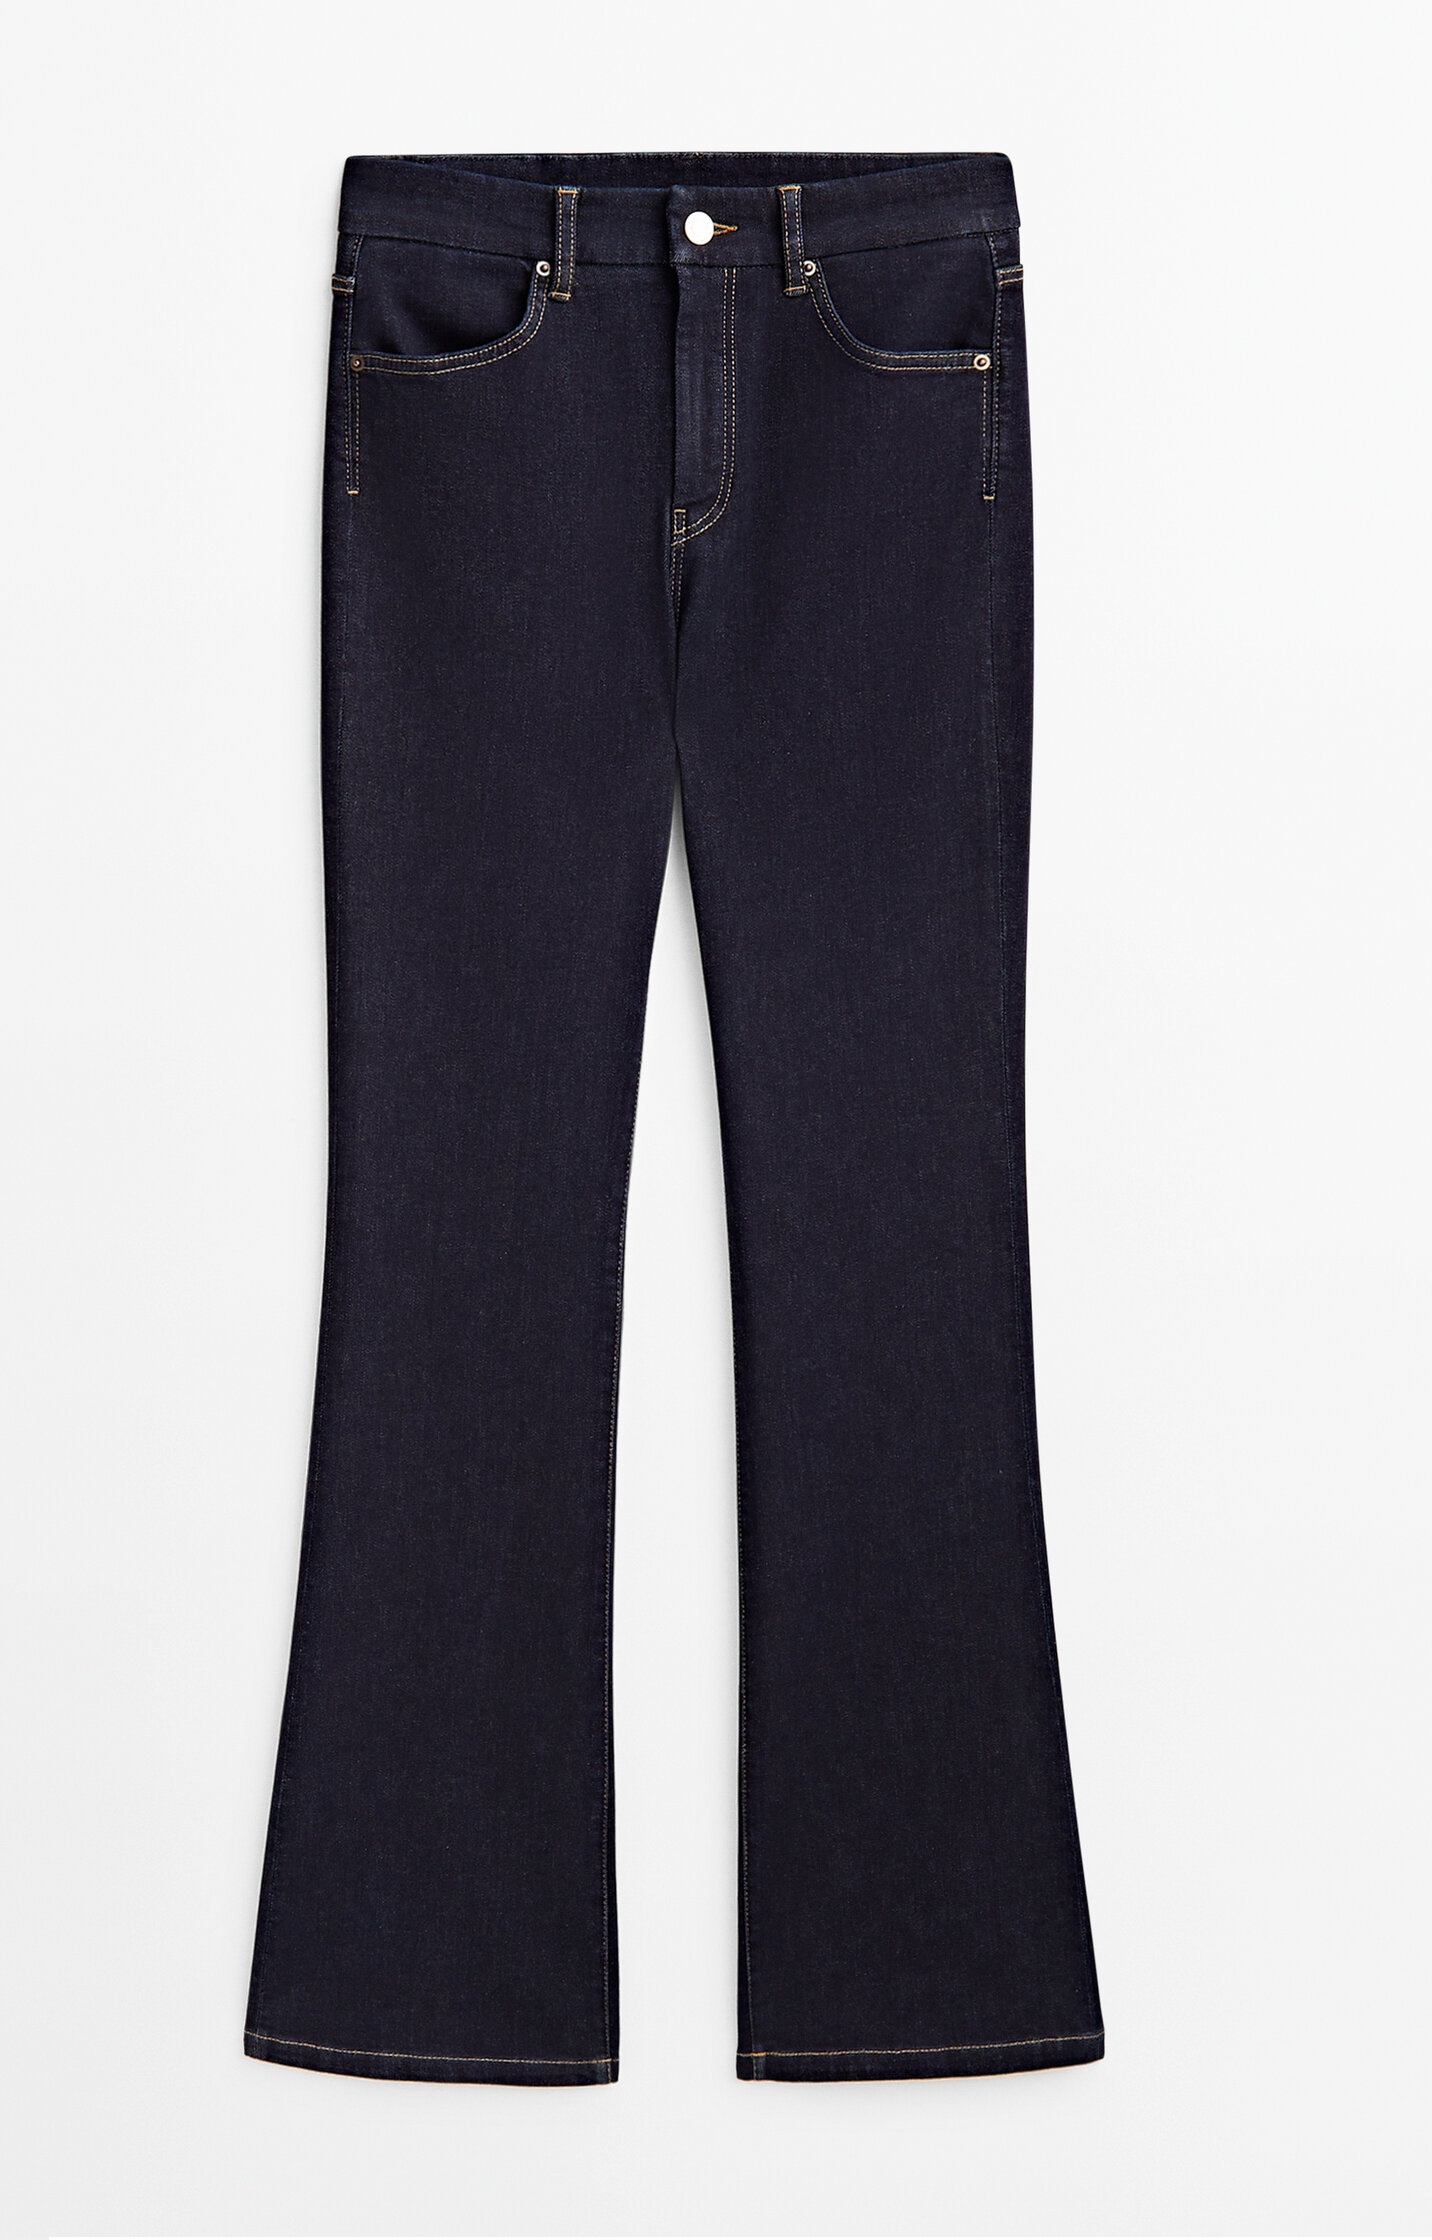 Джинсы Massimo Dutti Skinny Flare Fit High-waist, темно-синий джинсы скинни greyson с высокой посадкой monfrère цвет florence